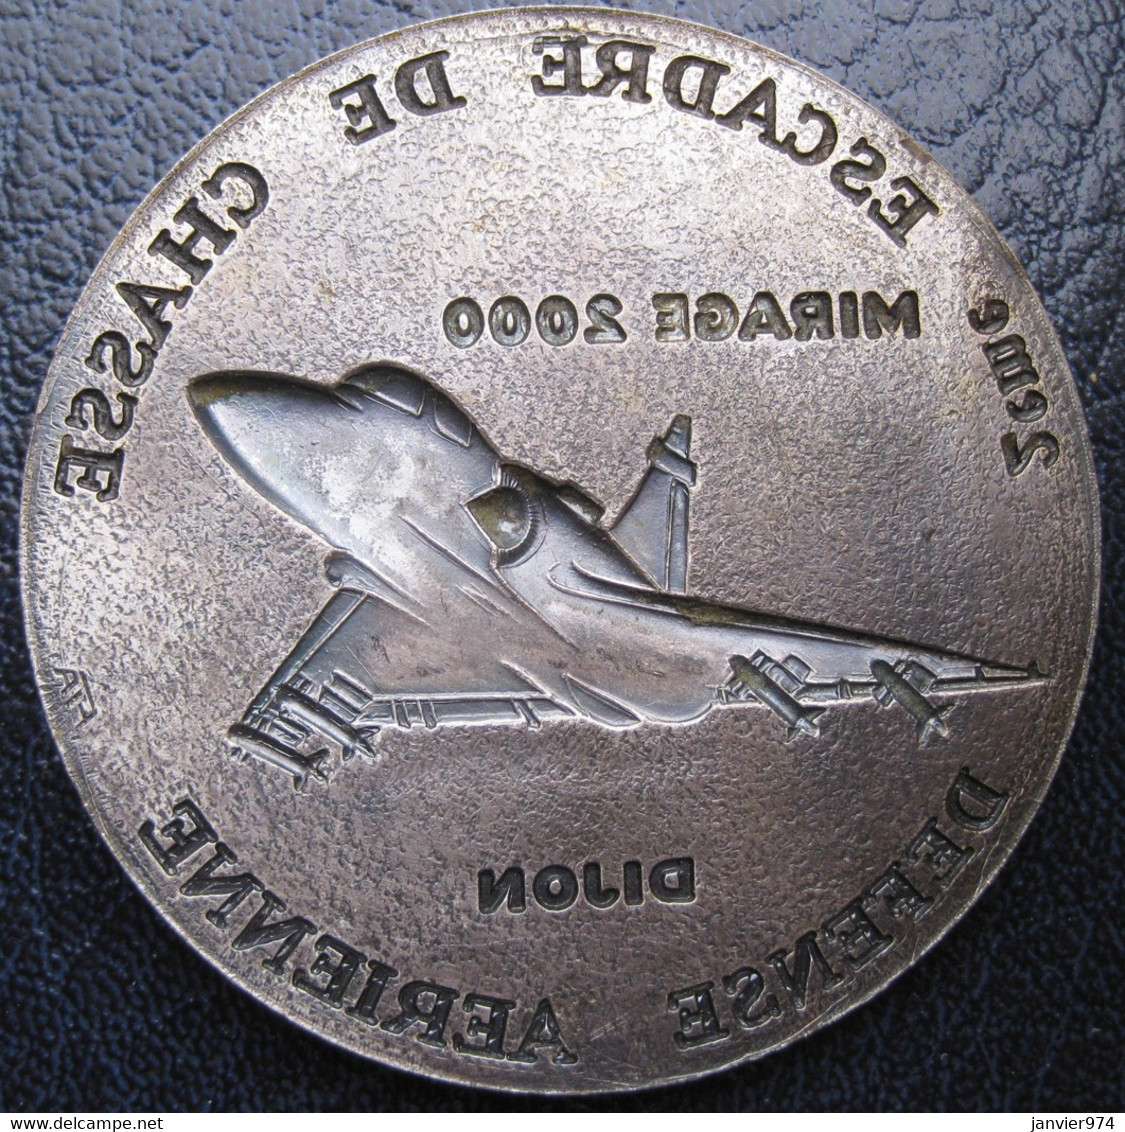 Applique Médaille 2e Escadre De Chasse Défense Aérienne Dijon Mirage 2000 - France